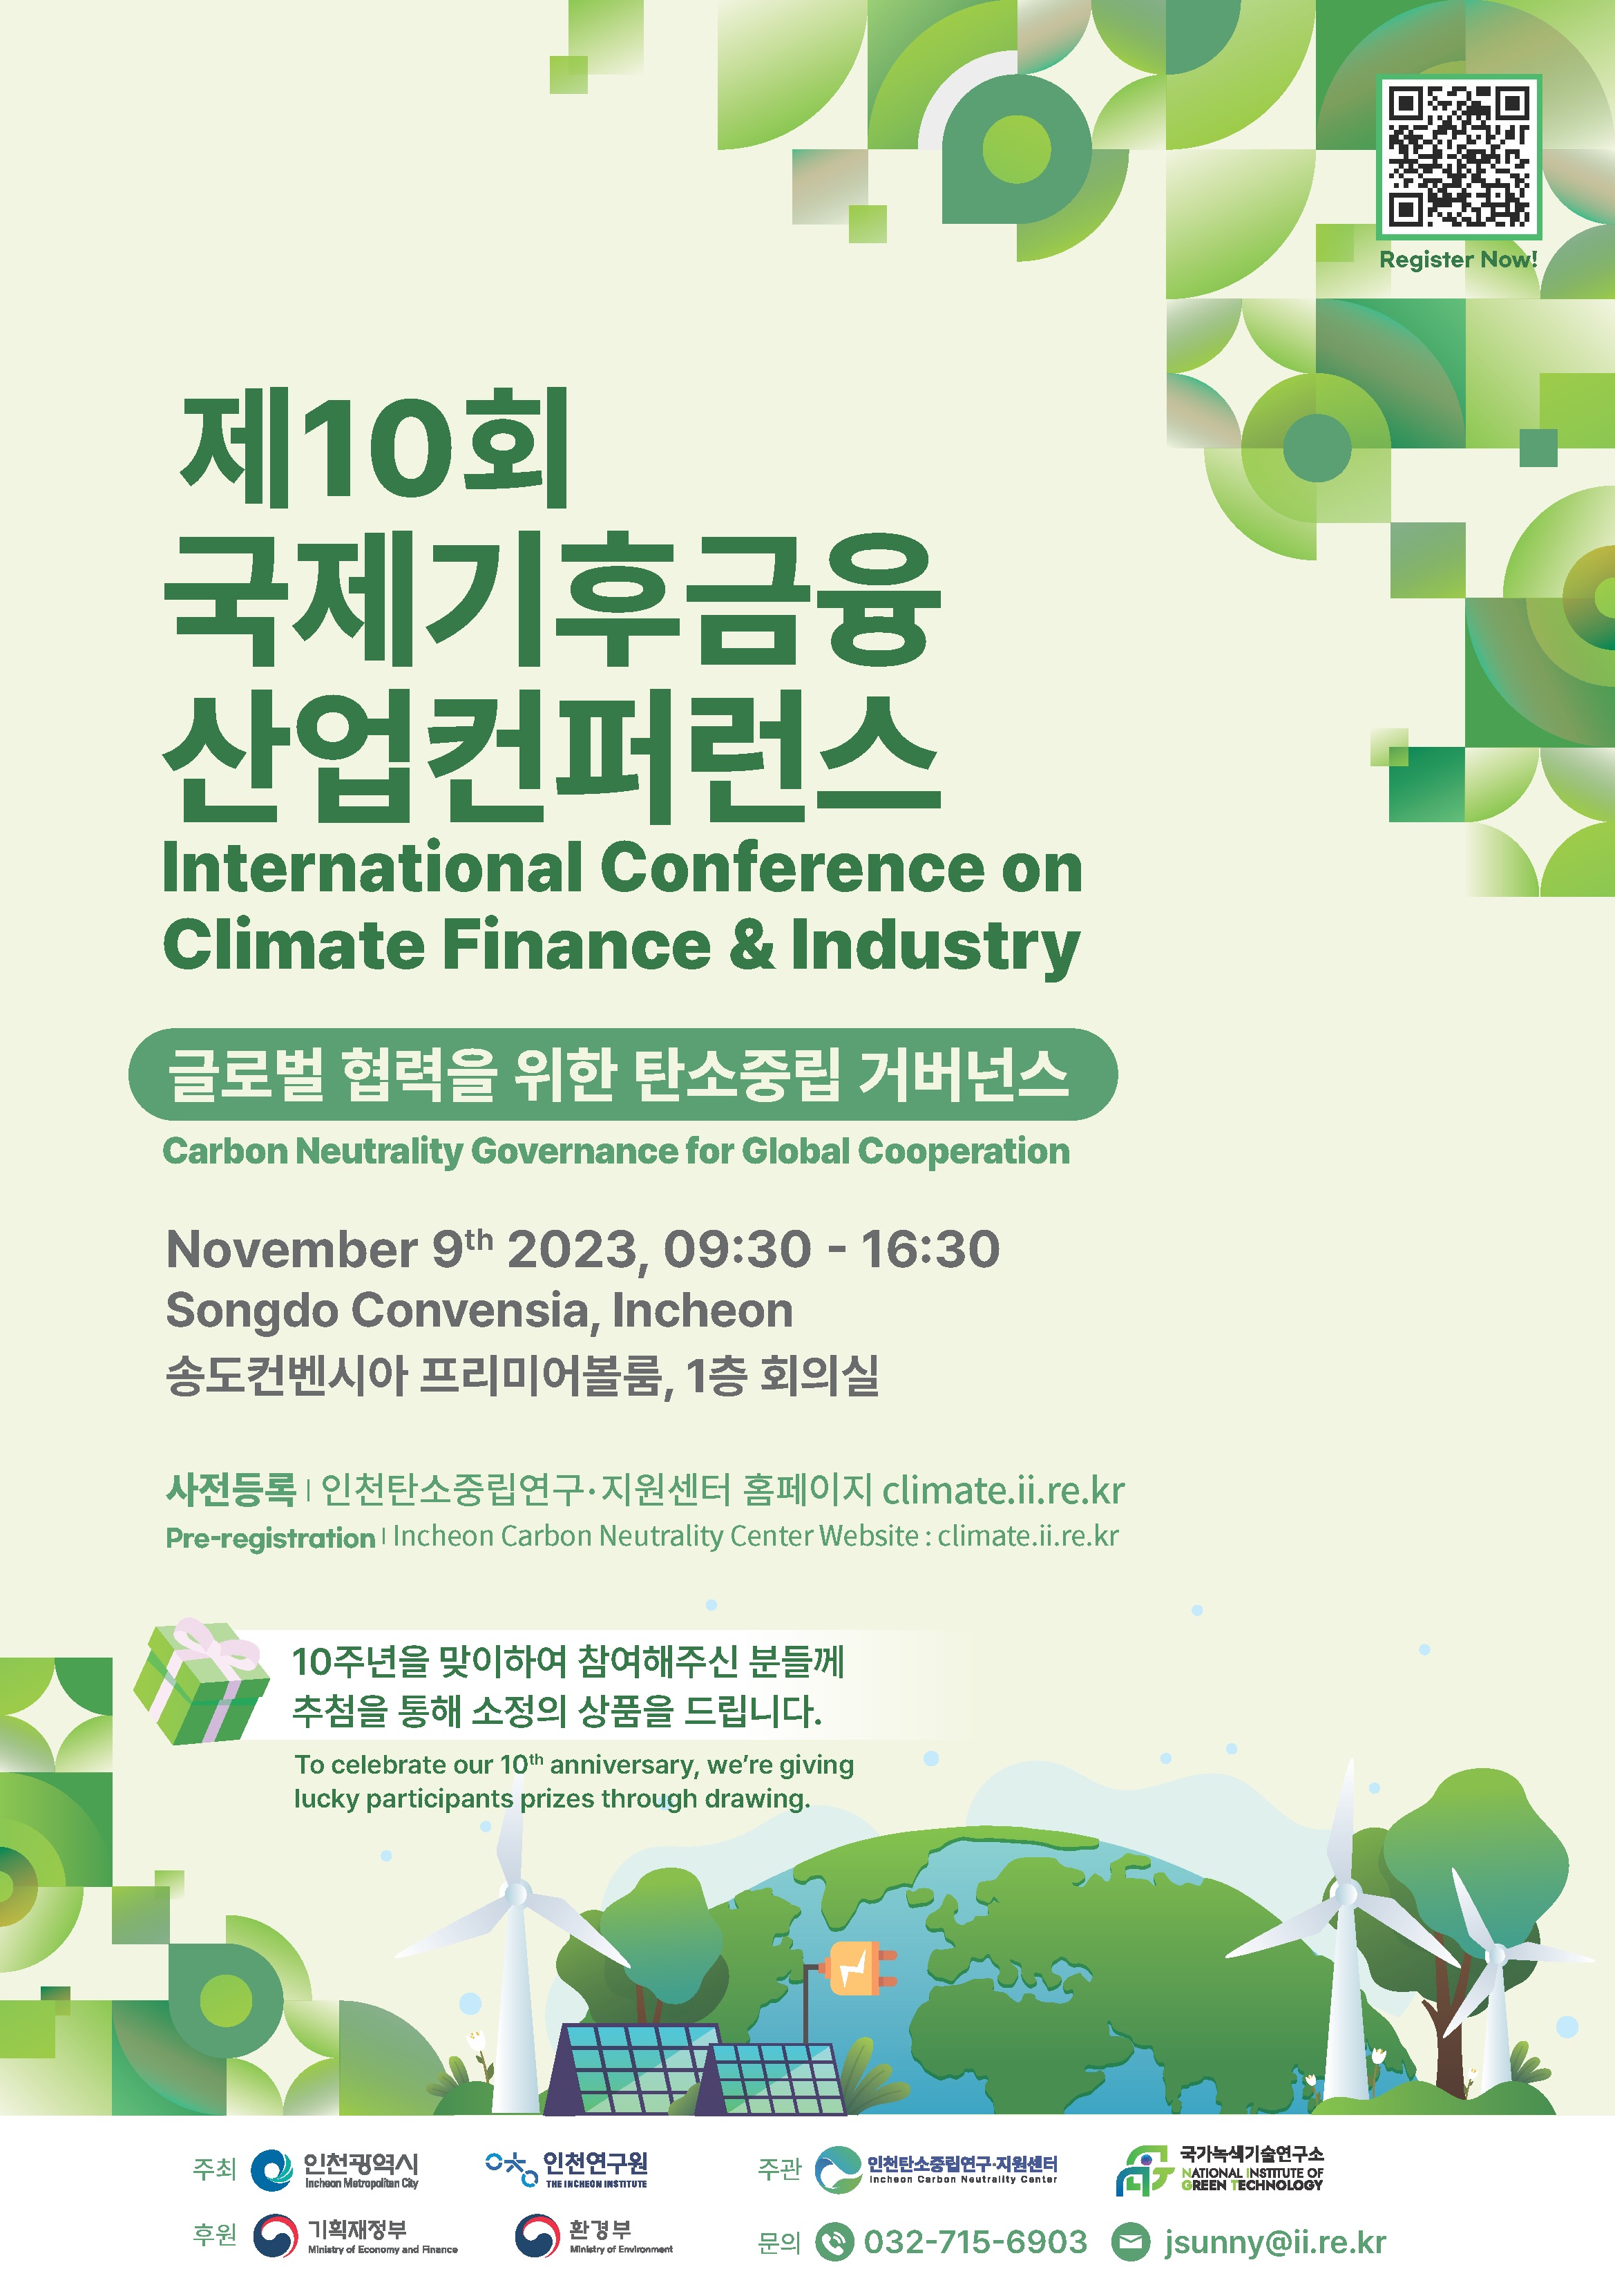 제10회 국제 기후 금융 산업 컨퍼런스 개최 안내의 1번째 이미지